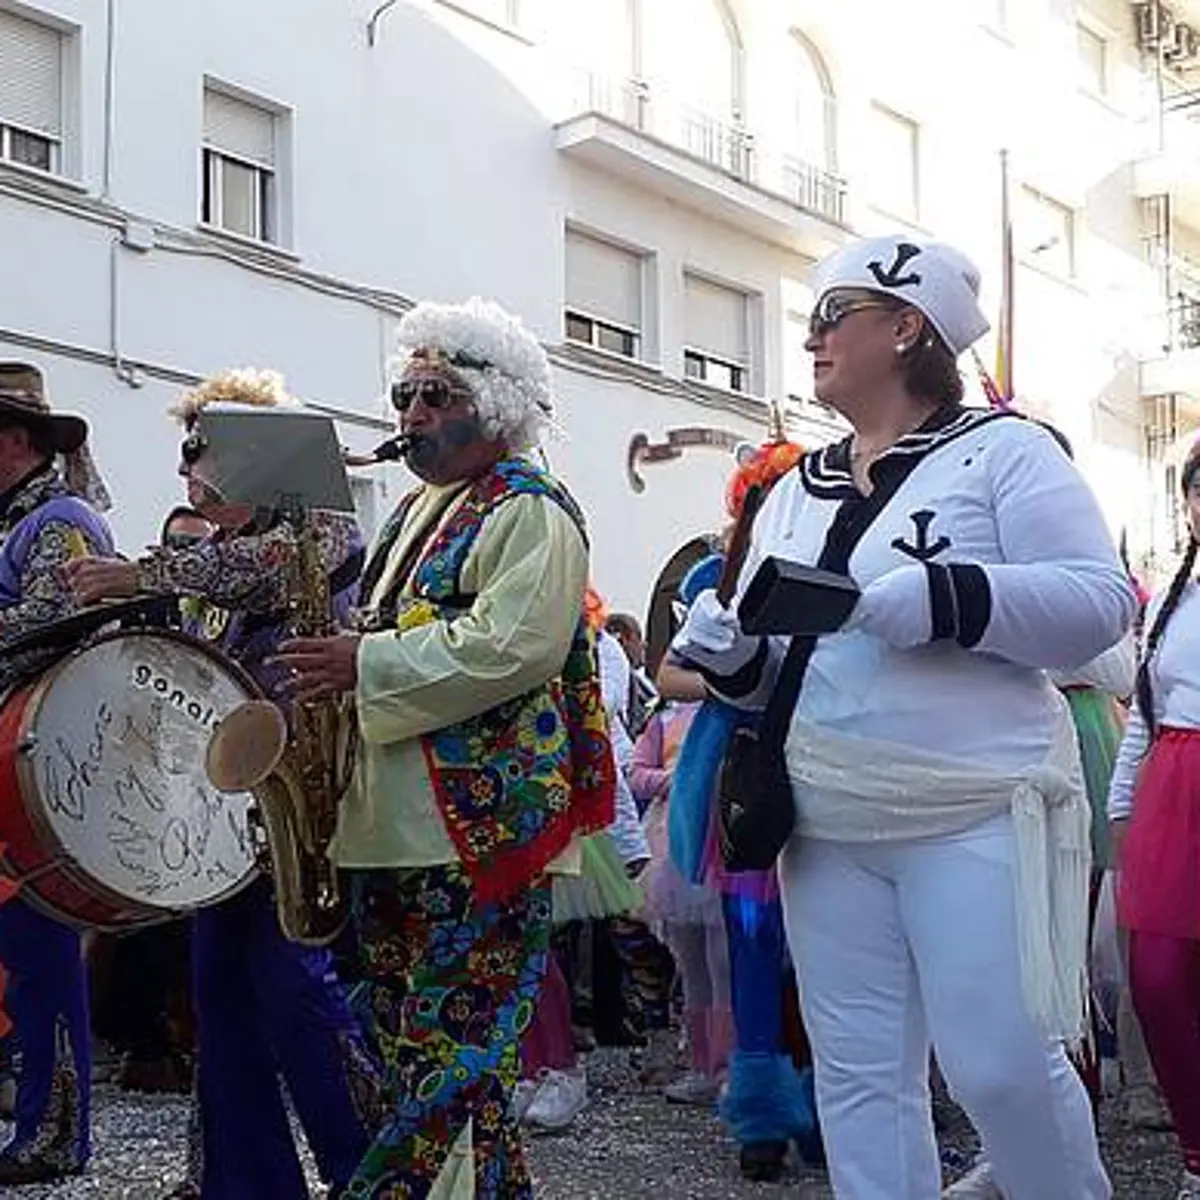 Chiclana on X: El photocall Burbuja de Carnaval, previsto en la Plaza de  Andalucía, se suspende por lluvia. El Pregón y las actuaciones previstas en  la Carpa SÍ continúan adelante.  /